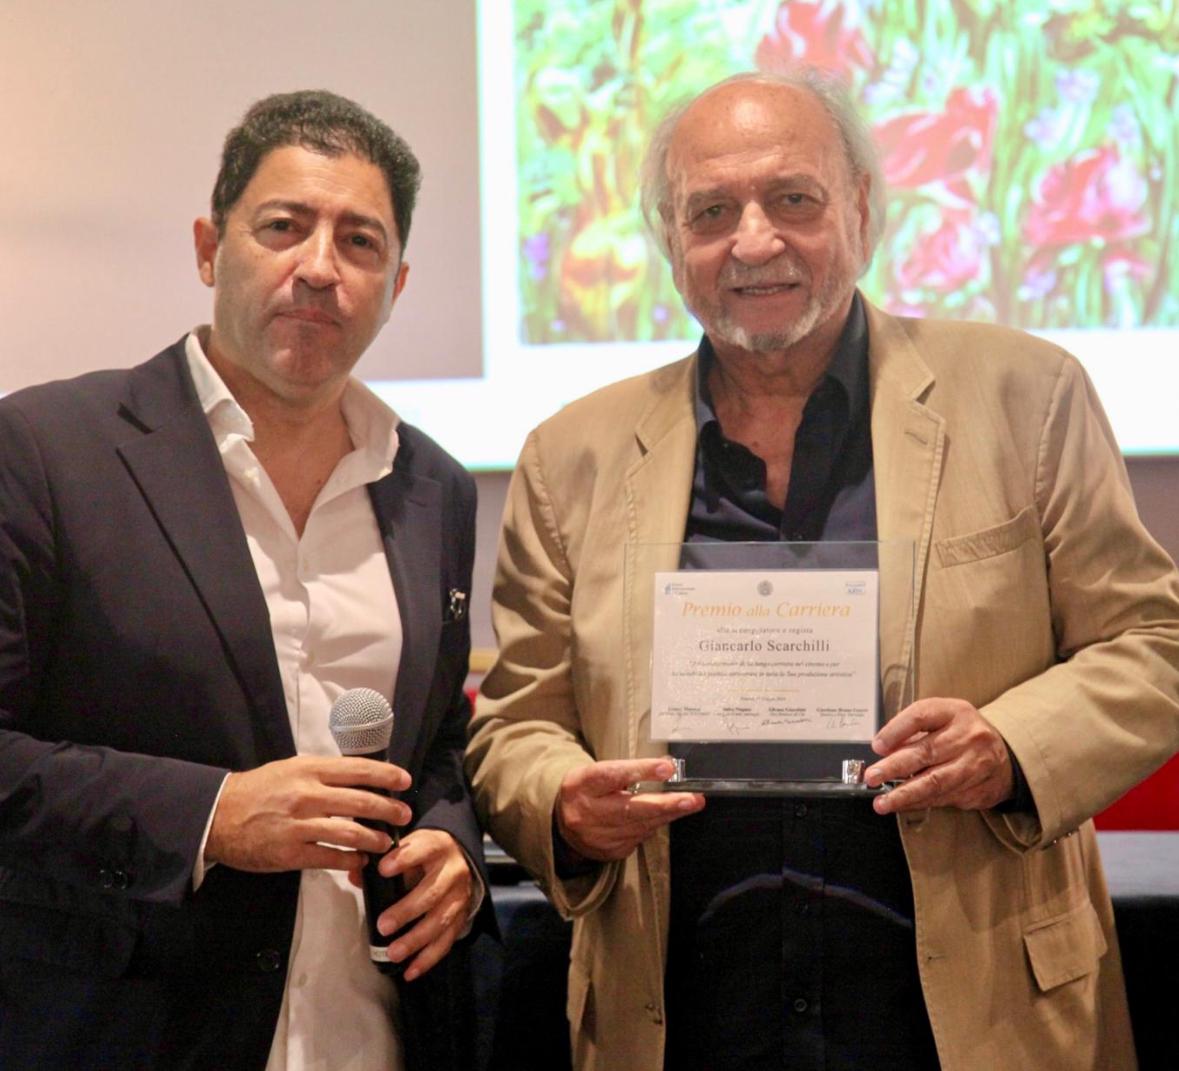 Premiazione di Giancarlo Scarchilli alla Pro Biennale di Venezia: un omaggio alla carriera di un Maestro del Cinema